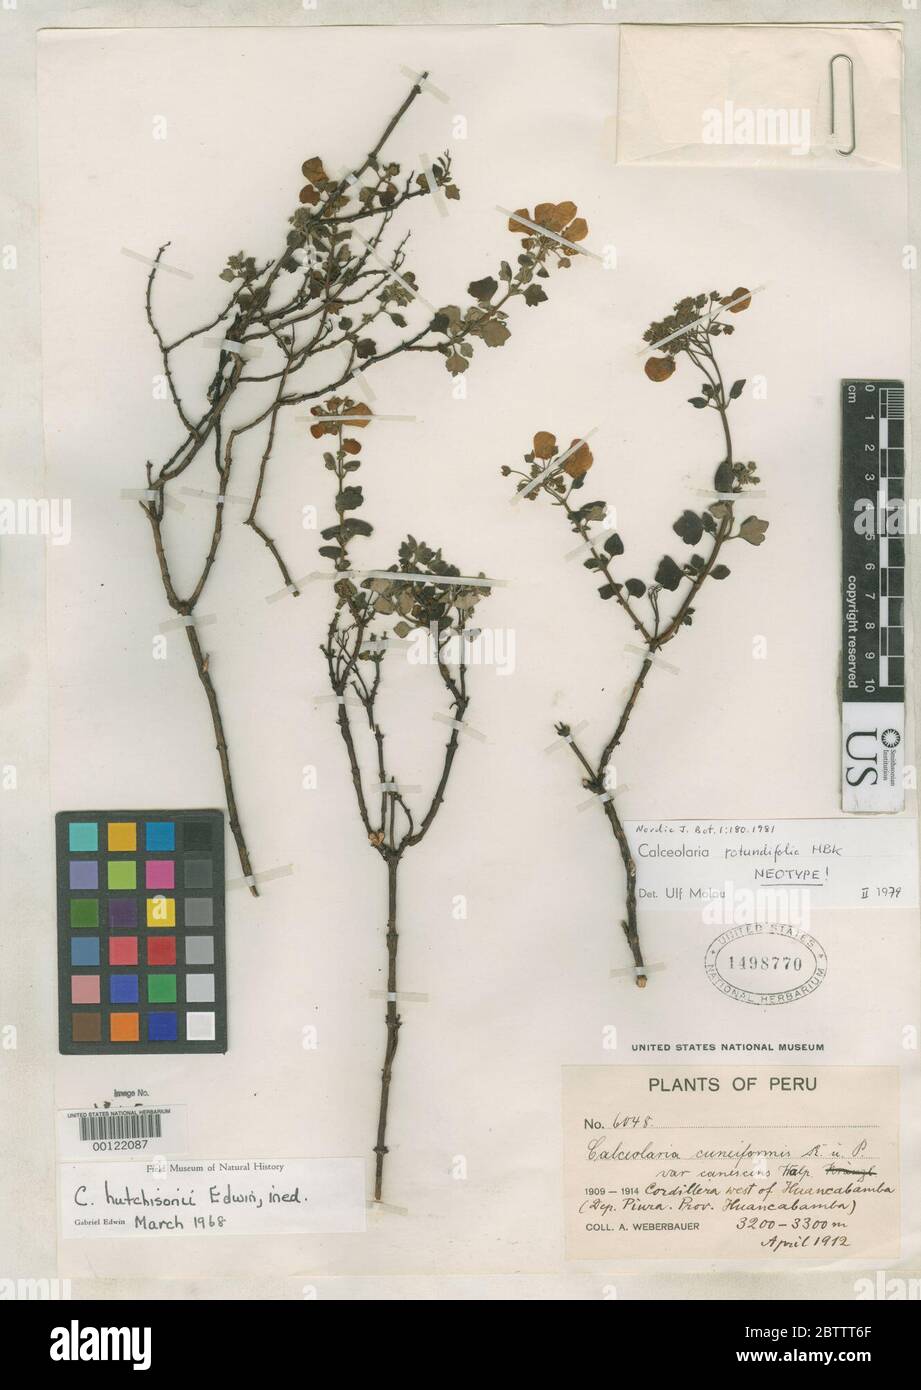 Calceolaria rotundifolia Kunth. Stock Photo